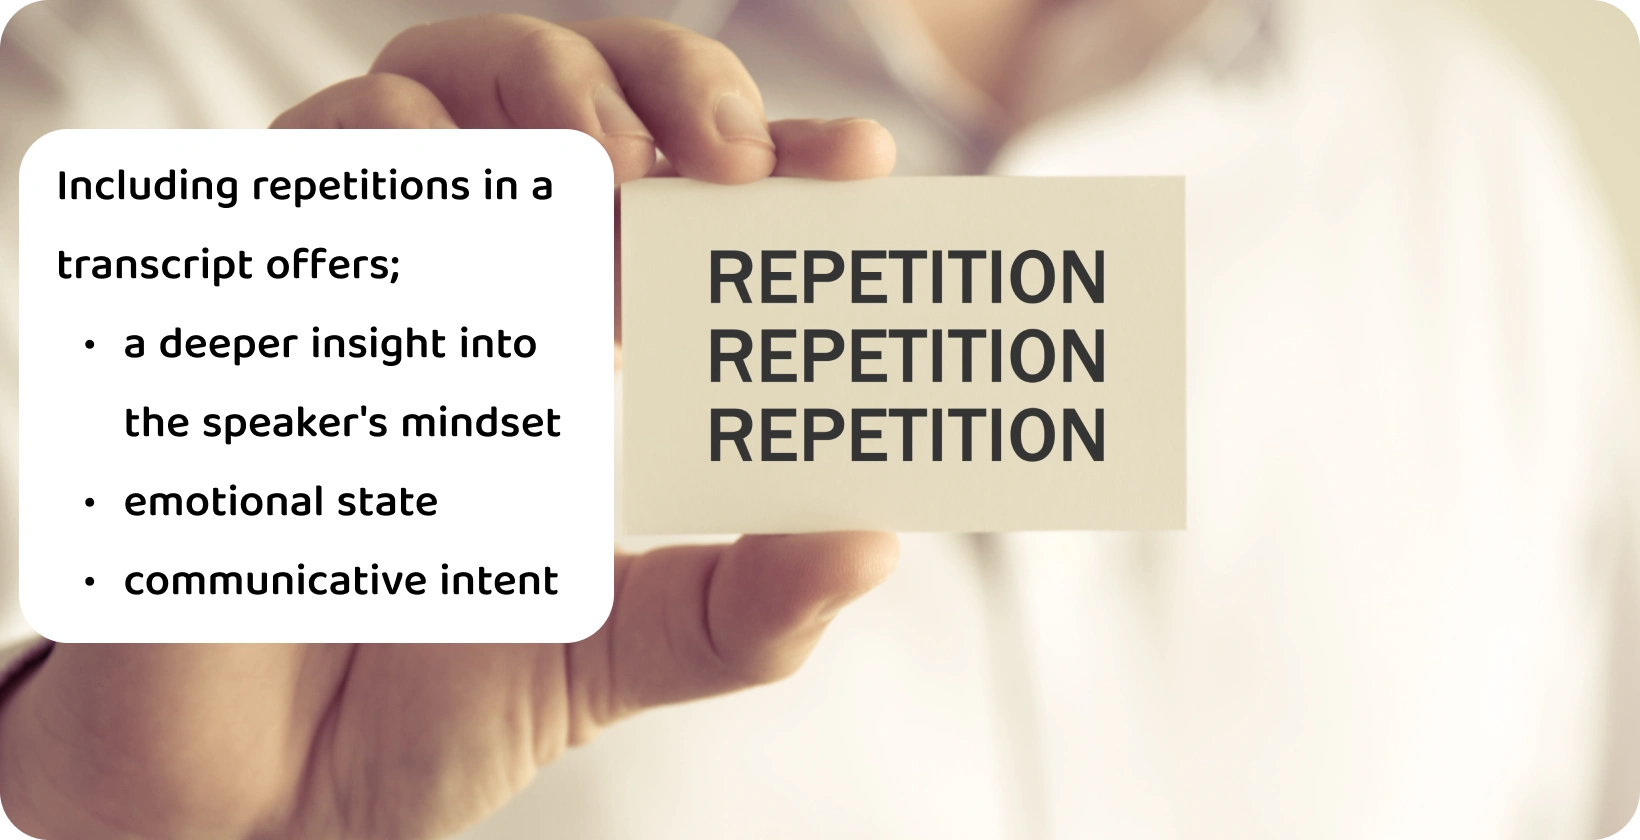 En närbild av en hand som håller ett kort med ordet "Repetition", vilket illustrerar begreppet upprepningar i en verbatim transkription.